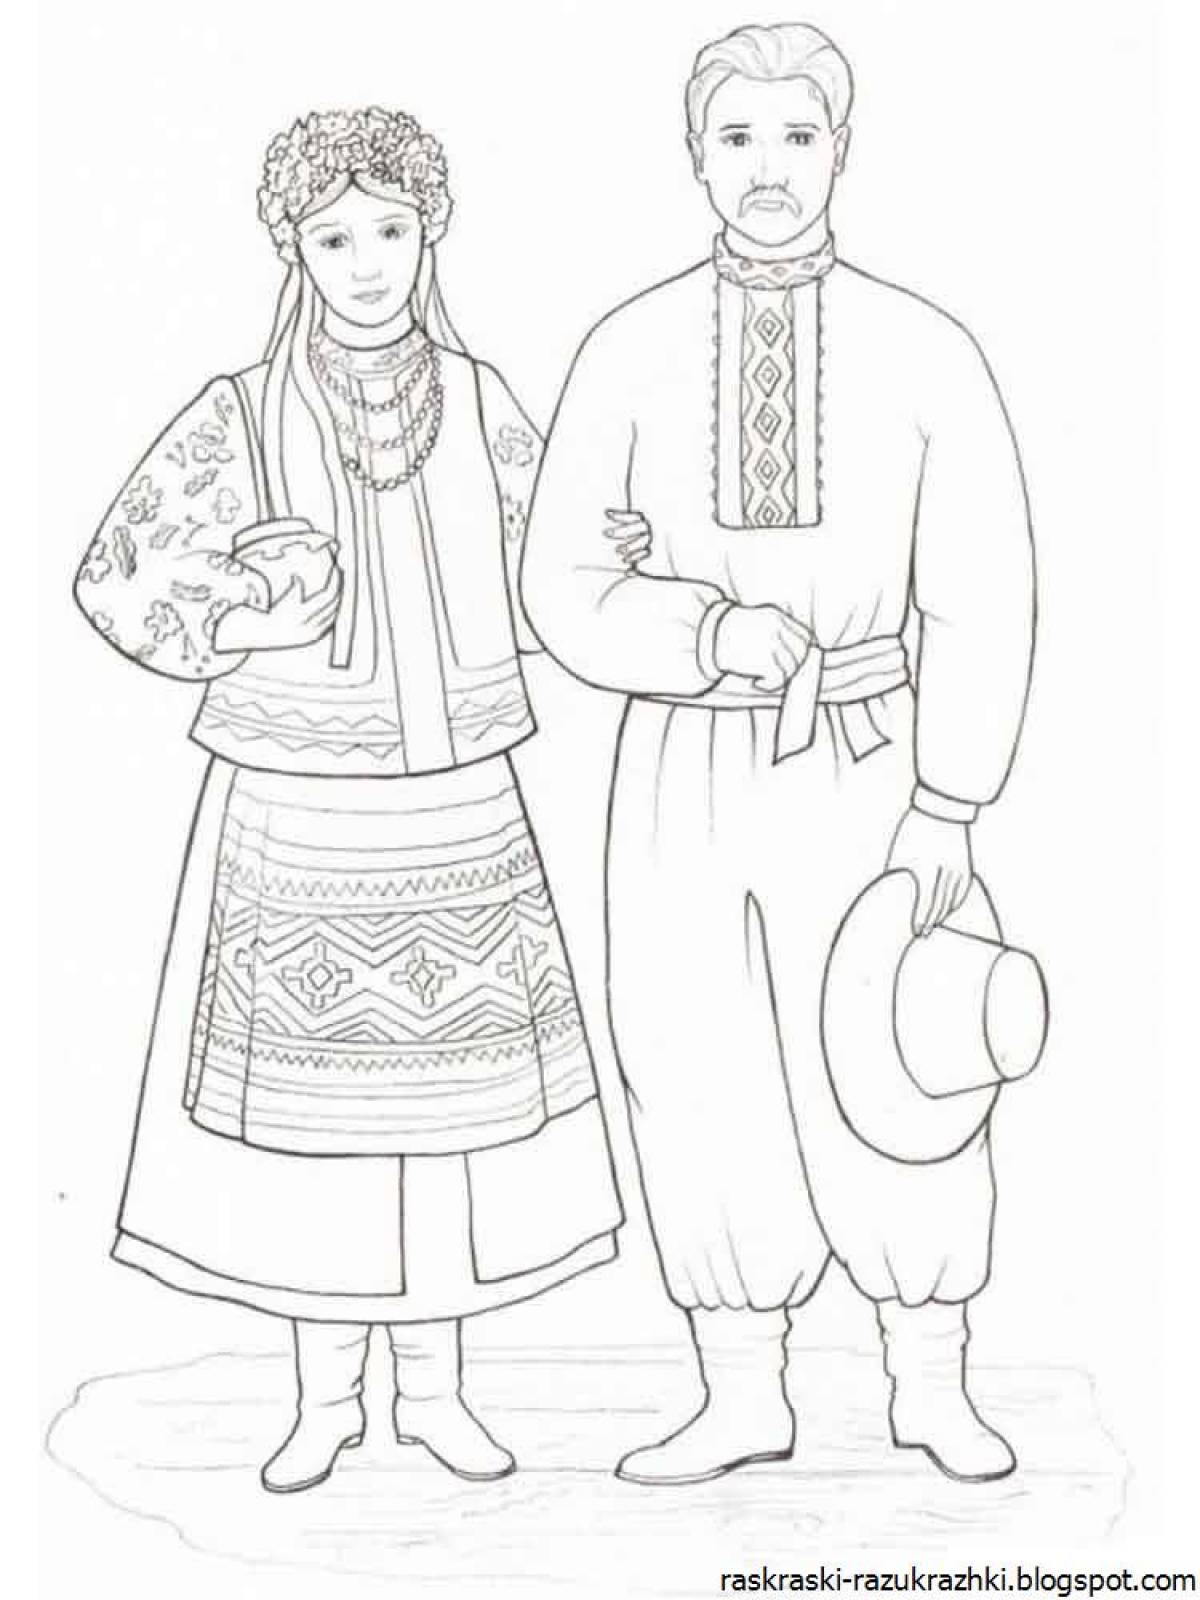 Раскраска классический русский народный костюм